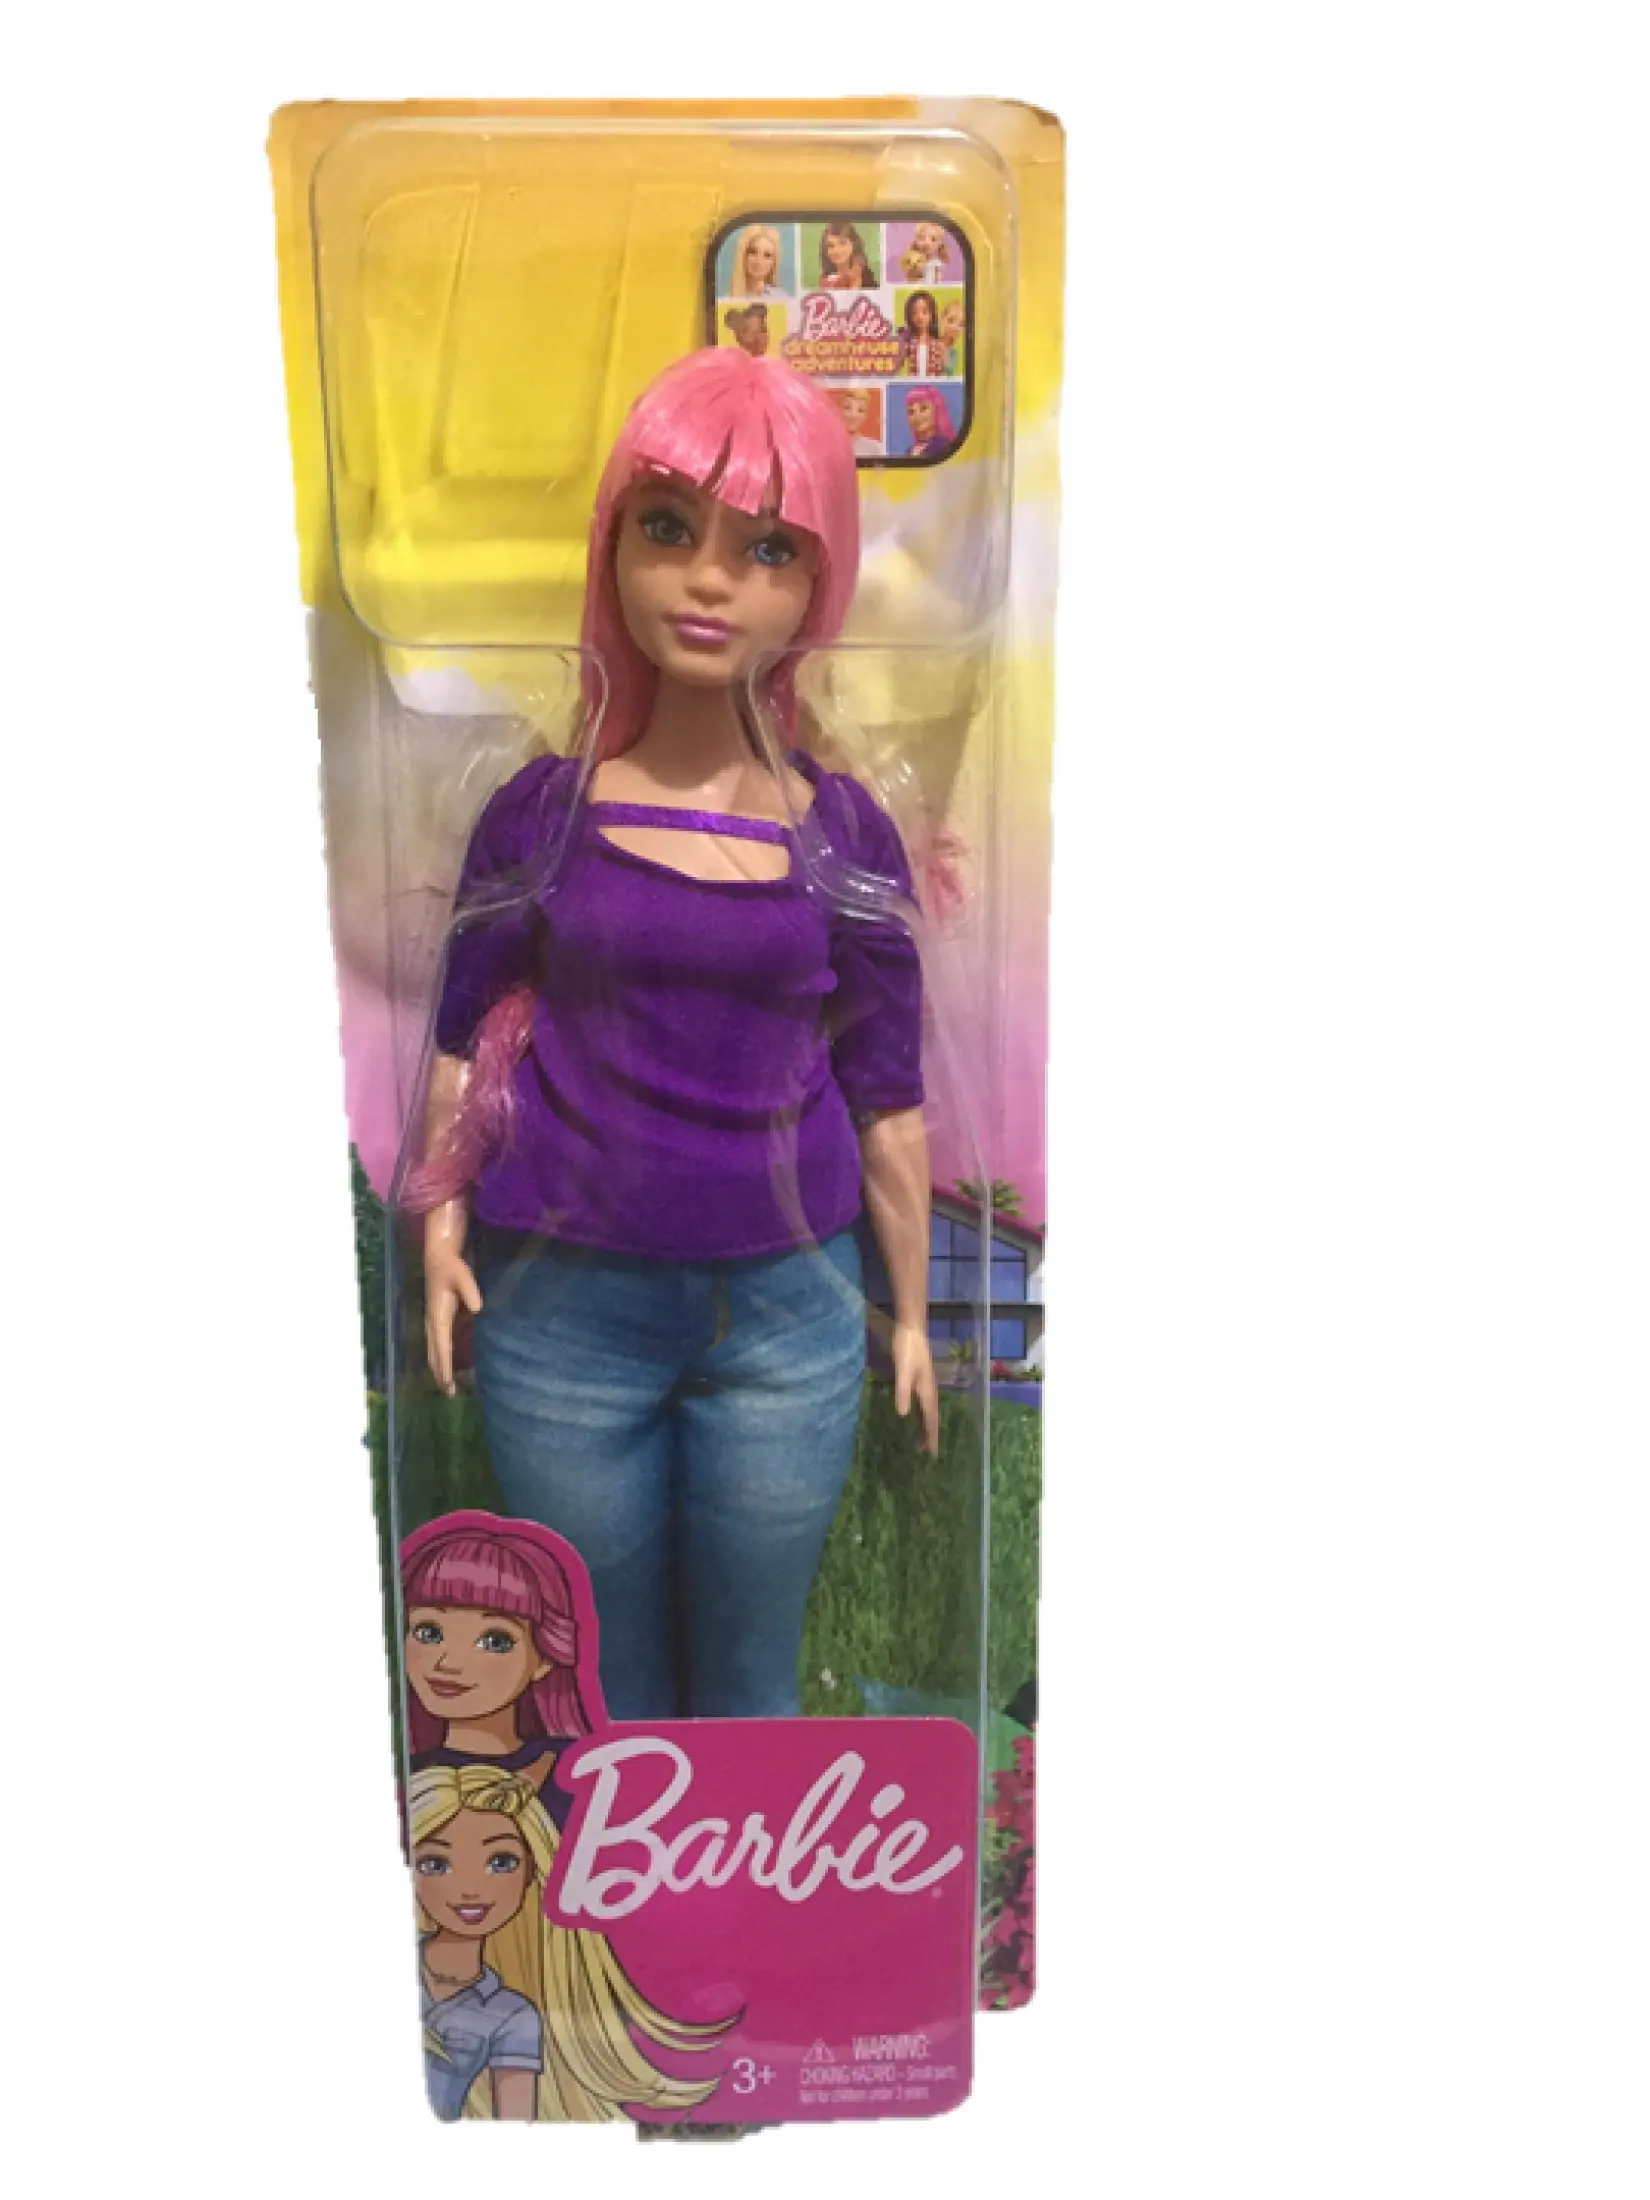 Barbie DREAMHOUSE Adventures Daisy CURVY Doll with Travel 887961683790